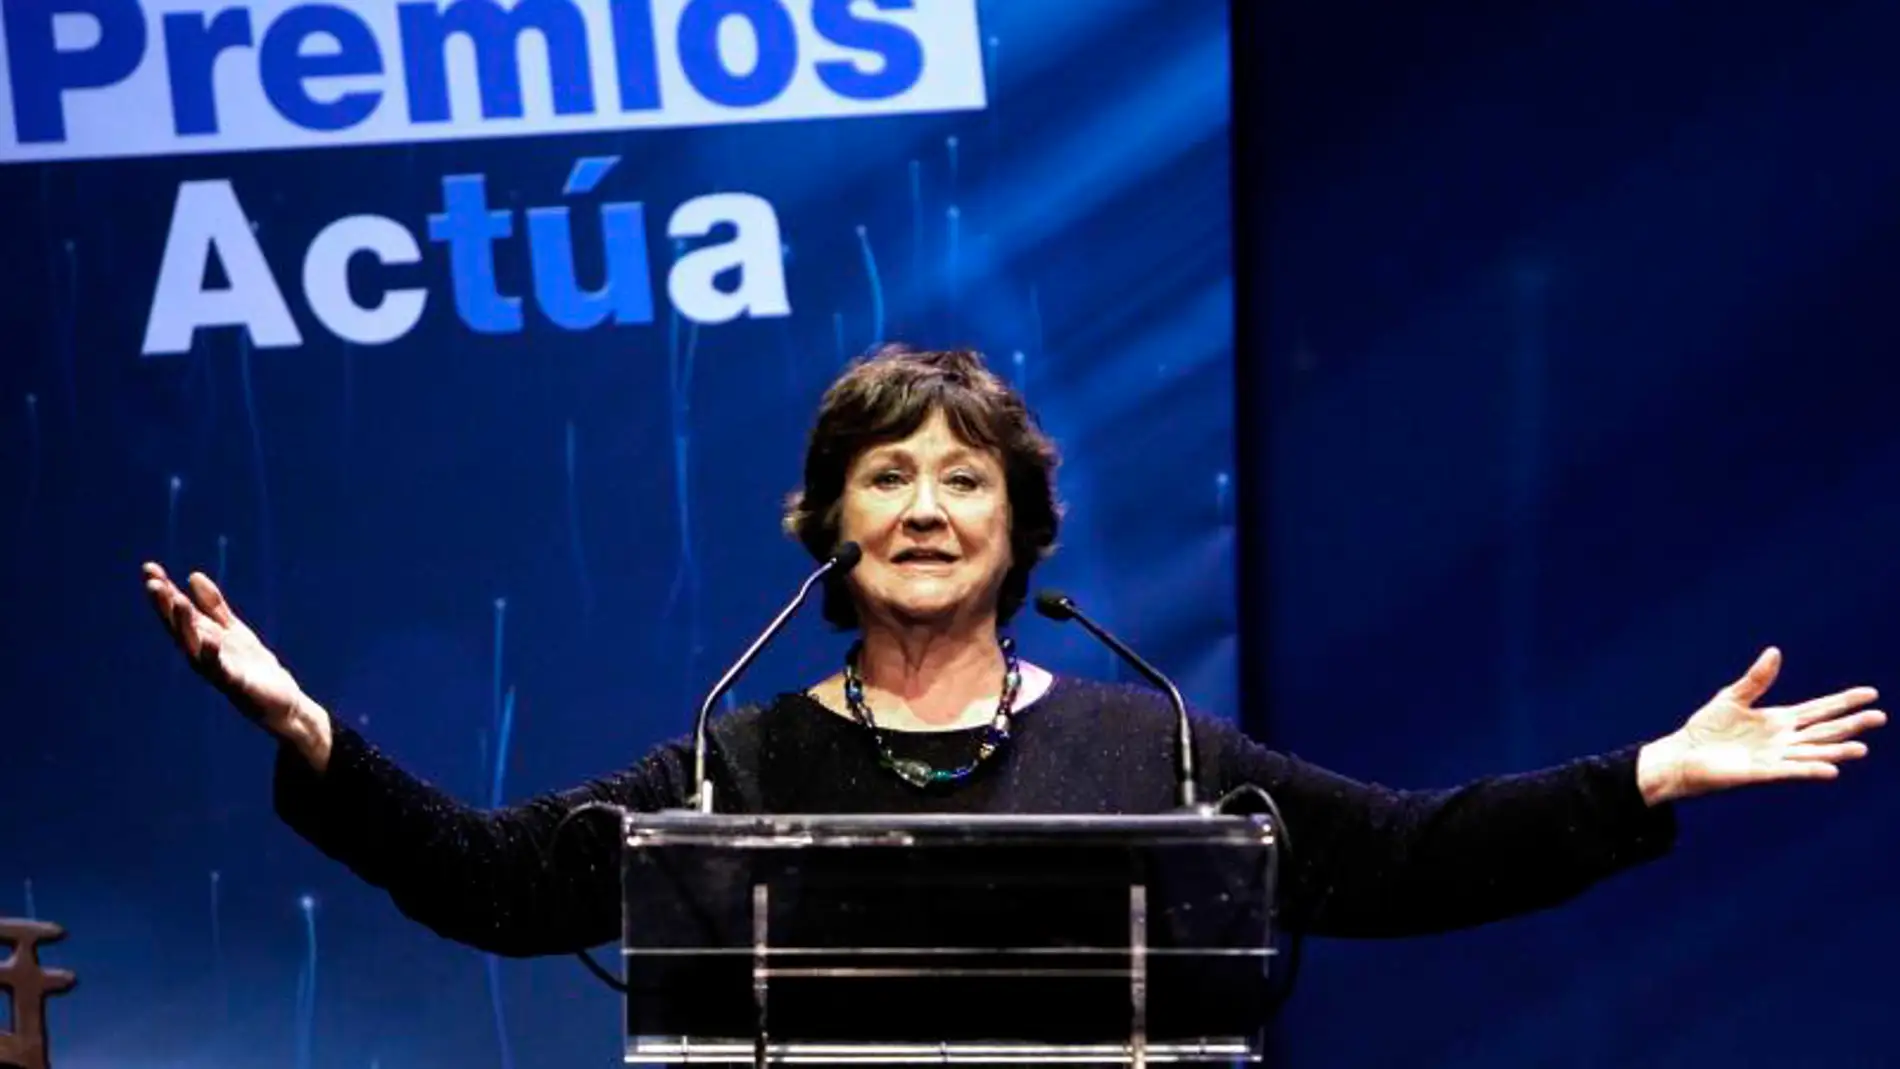 Julieta Serrano, Premio Nacional de Teatro 2018